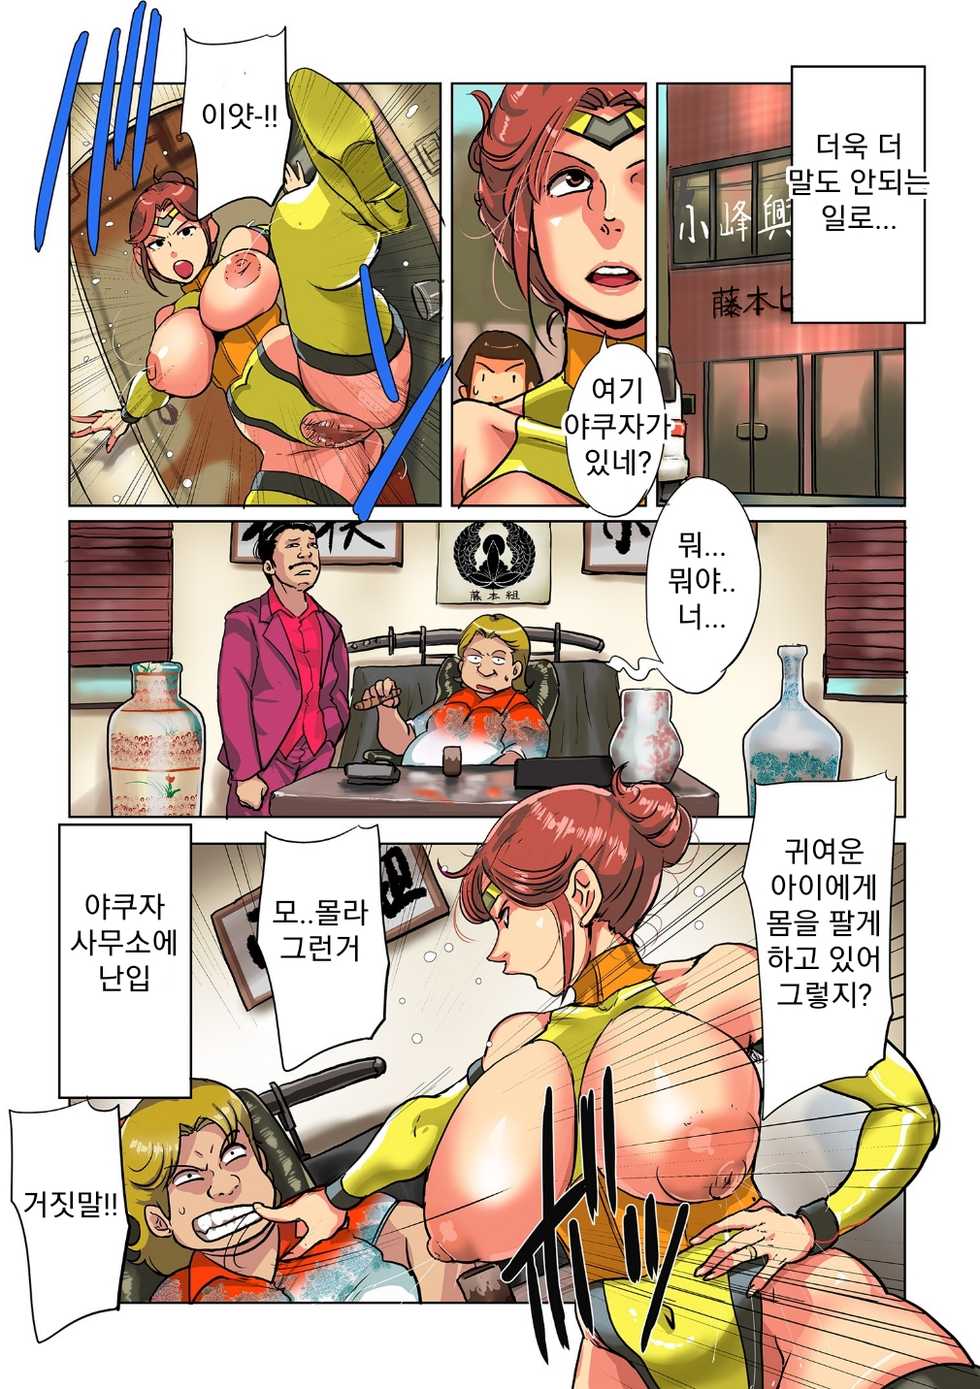 [Mokuzou] Etsuko-san wa Machi no Minna no Onahole 3 | 에츠코씨는 마을 모두의 오나홀 3  (comic KURiBERON DUMA 2018-03 Vol. 09) (korean) - Page 7